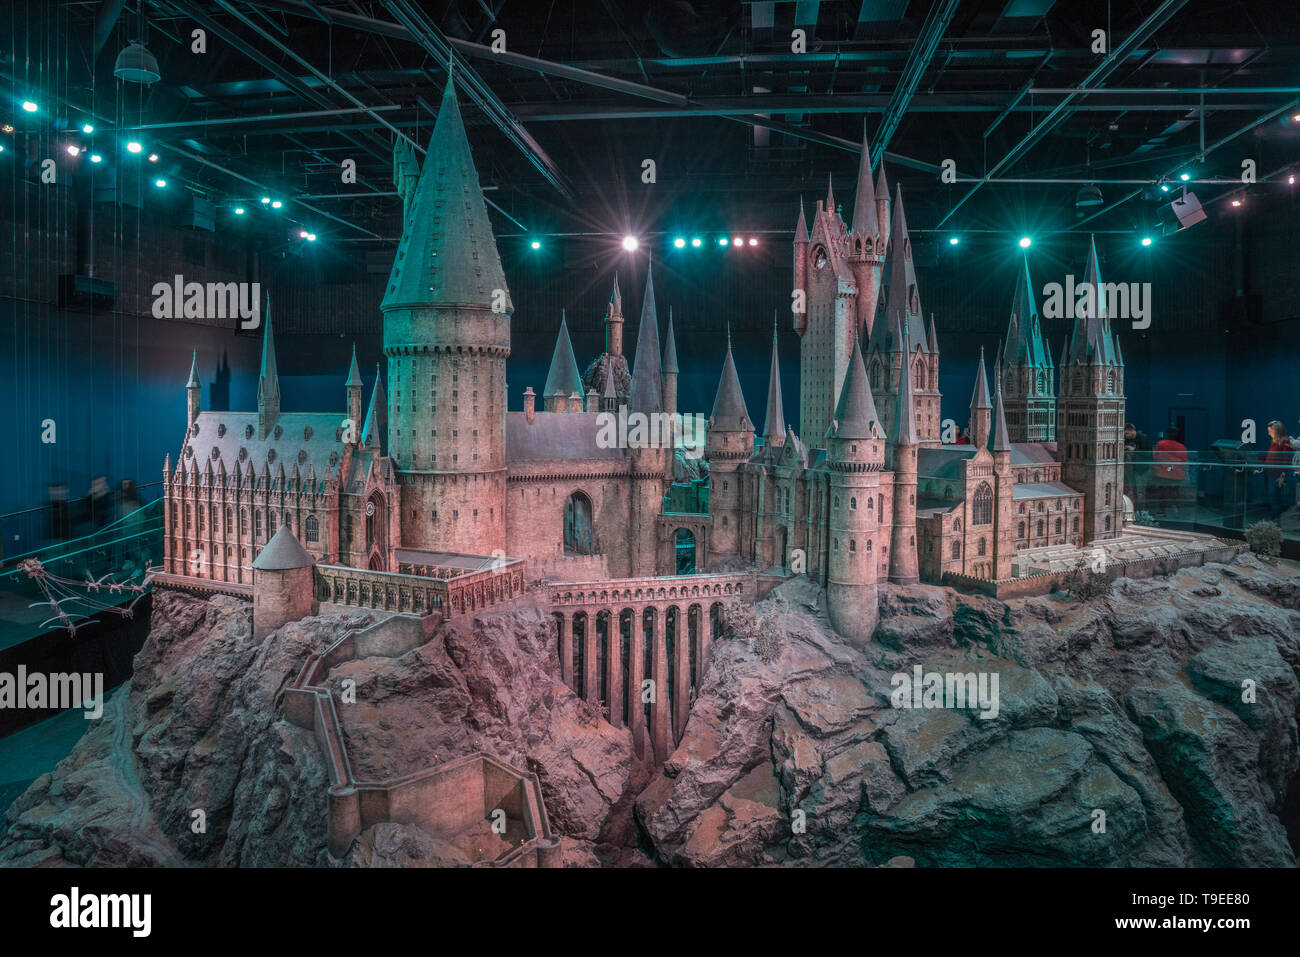 Enorme Modell von Hogwarts Schloss, das sich auf die Produktion der Filme  verwendet wurde, Warner Bros Studio Tour" die Herstellung von Harry Potter',  London, UK Stockfotografie - Alamy